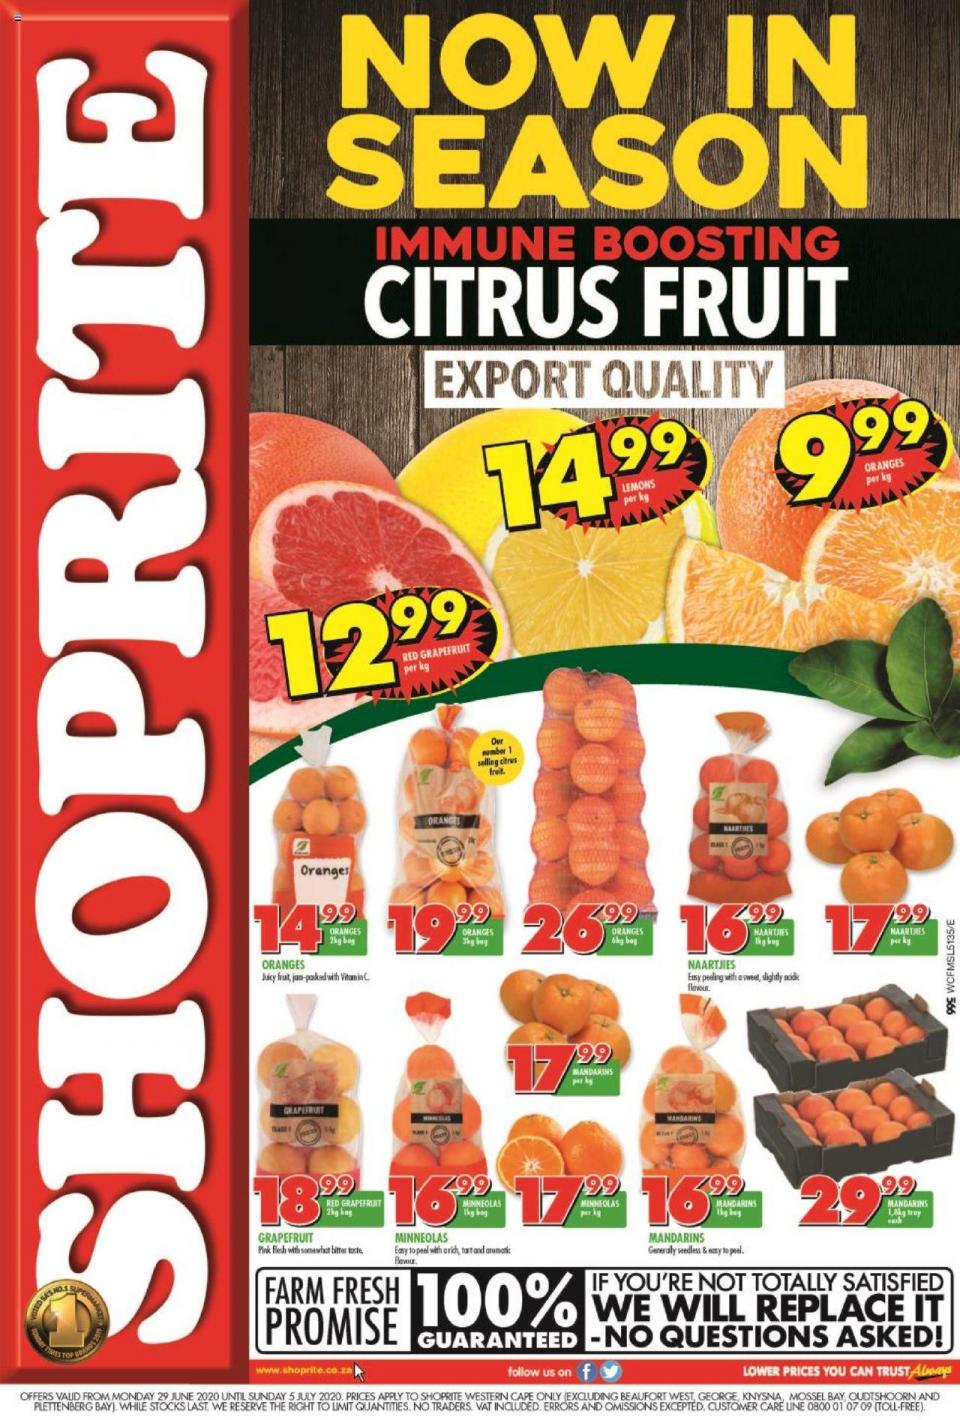 shoprite specials citrus fruit promotion 29 june 2020 western cape